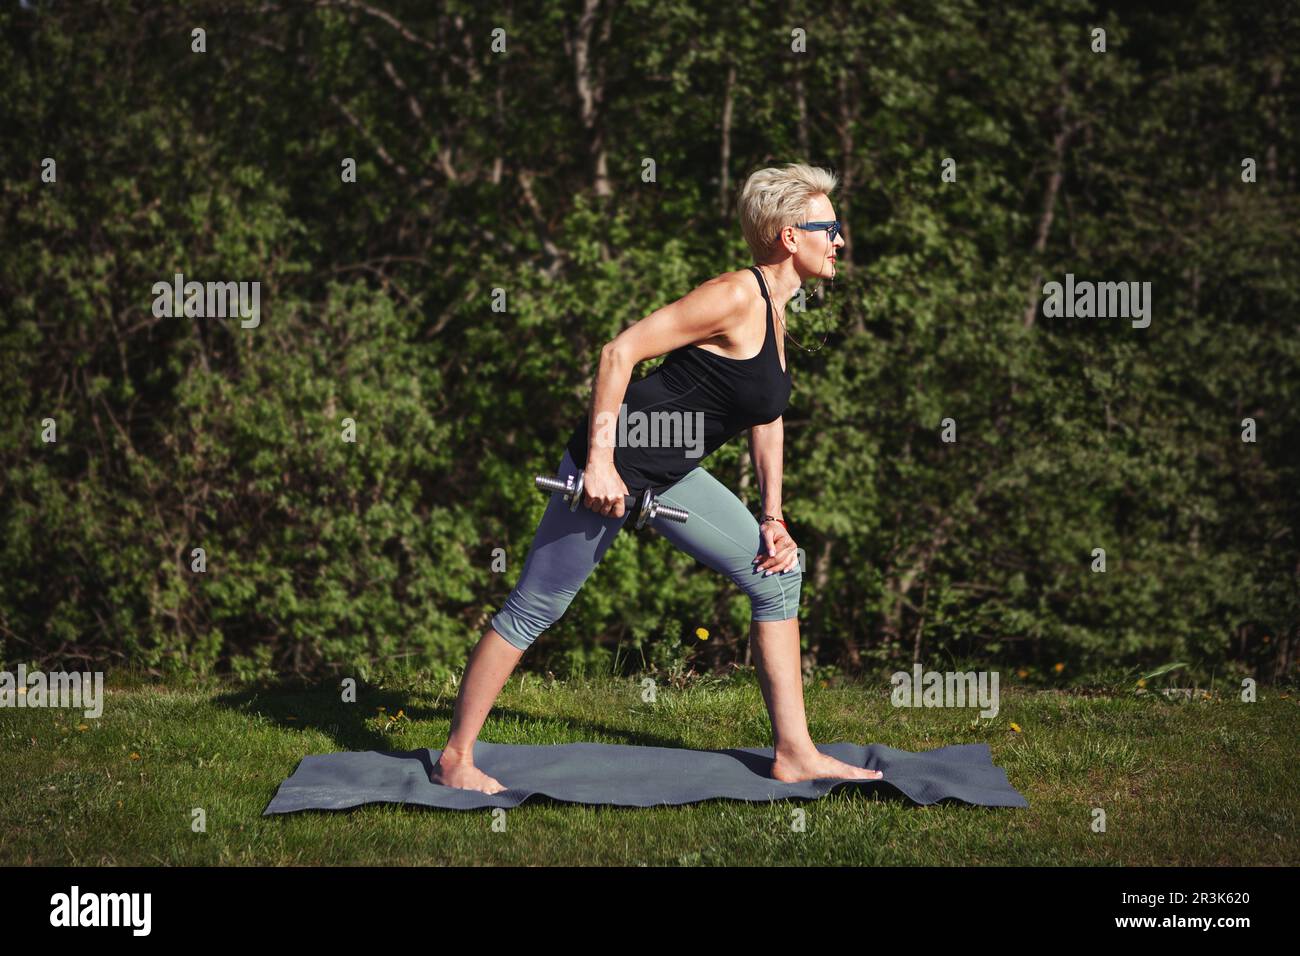 La donna anziana ama allenarsi, allenarsi con il manubrio, allenarsi in mezzo alla natura, dedicarsi a uno stile di vita sano e rimanere attiva. OU Foto Stock